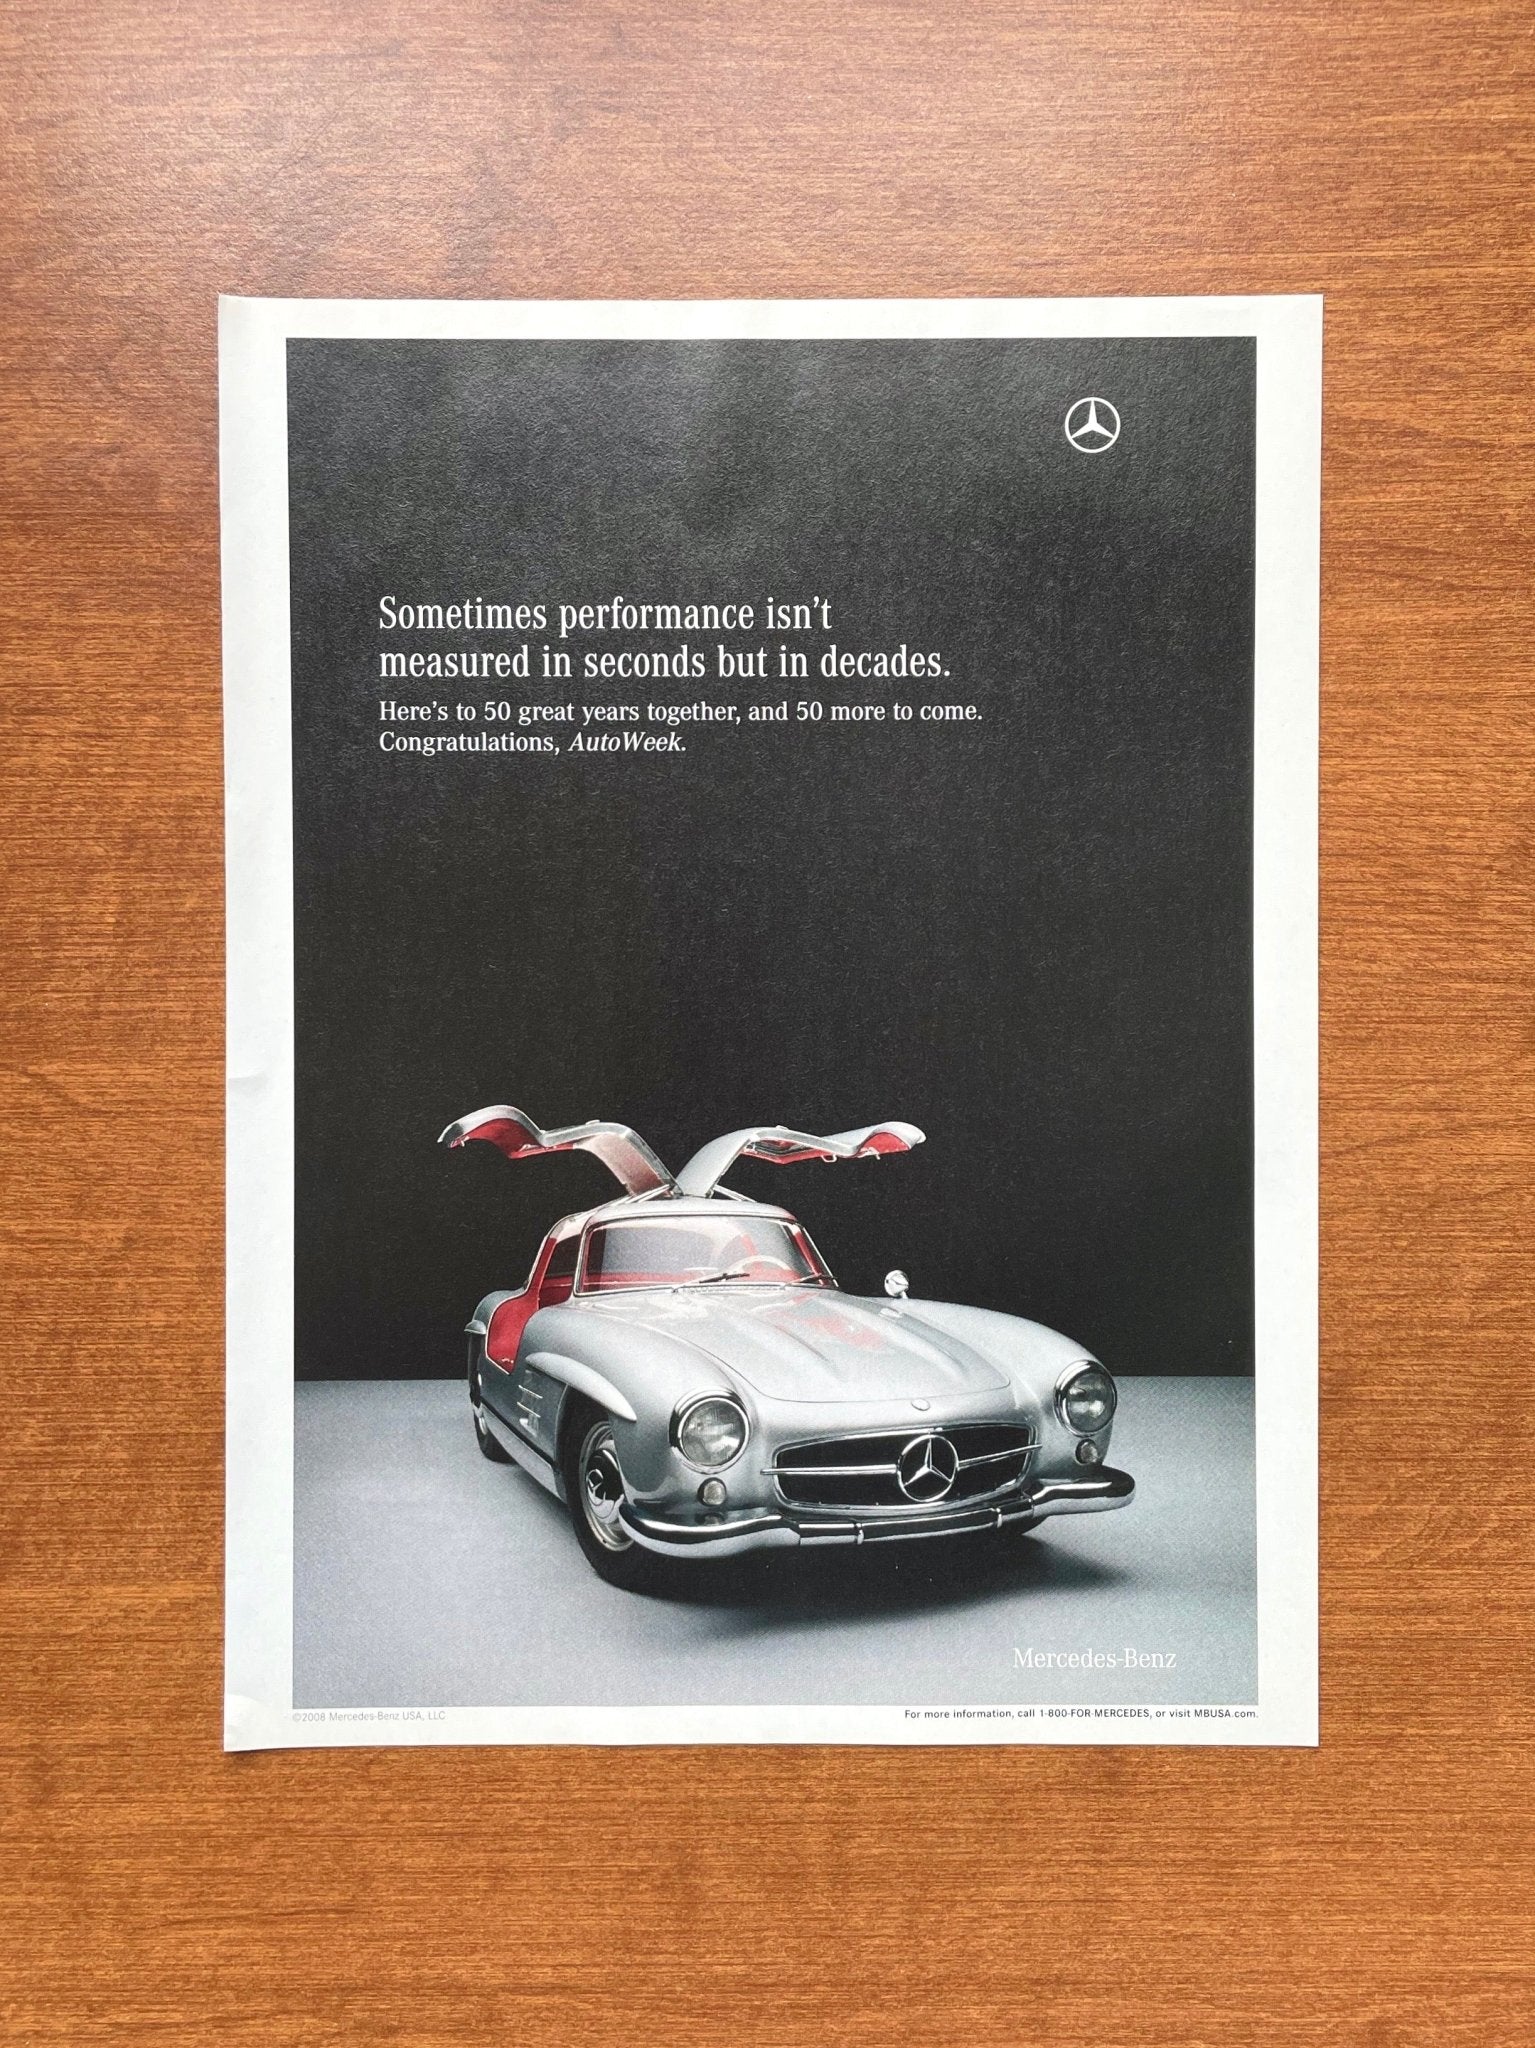 2008 Mercedes Benz Gullwing Advertisement